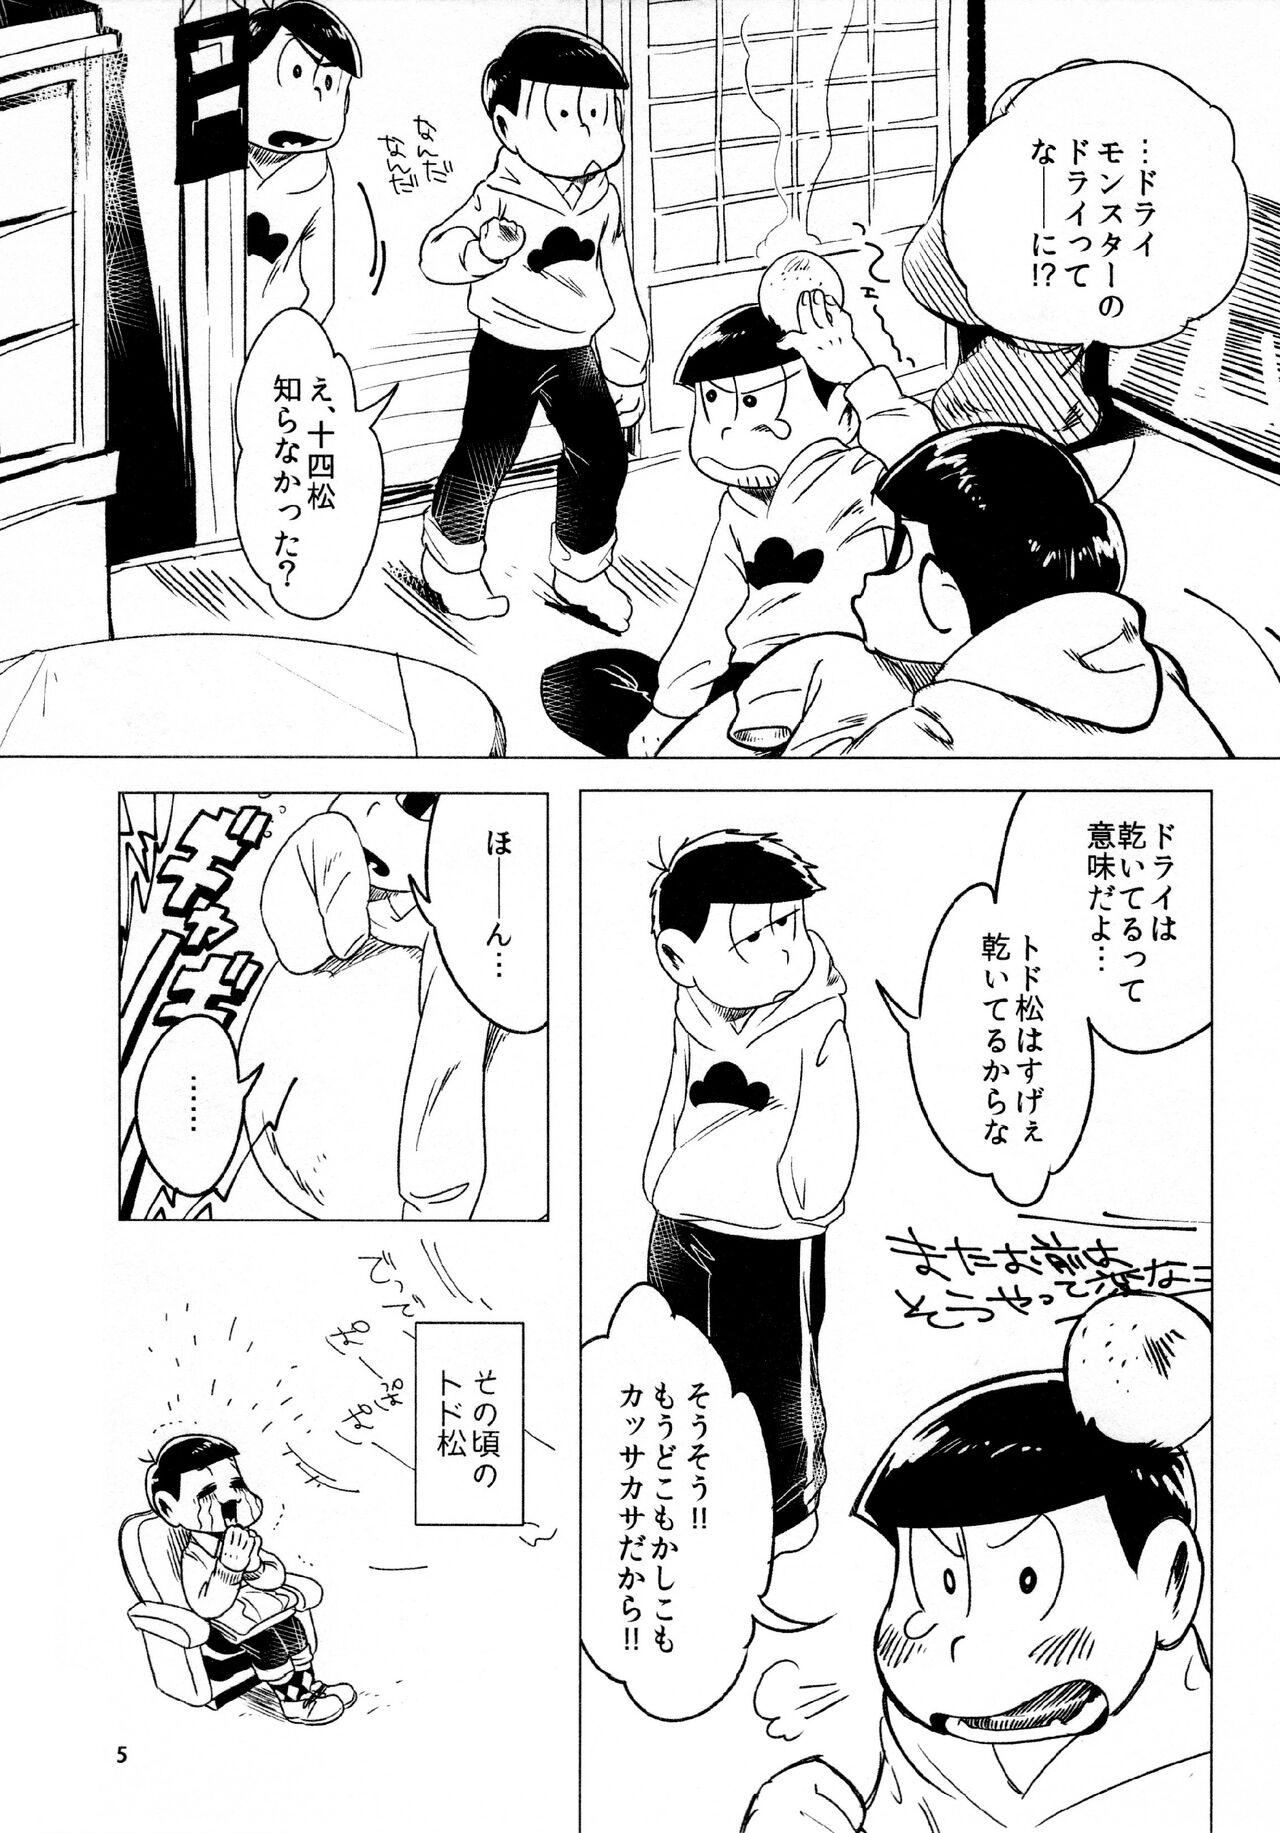 Piercing todomatsu bishi yonurekeikaku - Osomatsu-san Cojiendo - Page 5